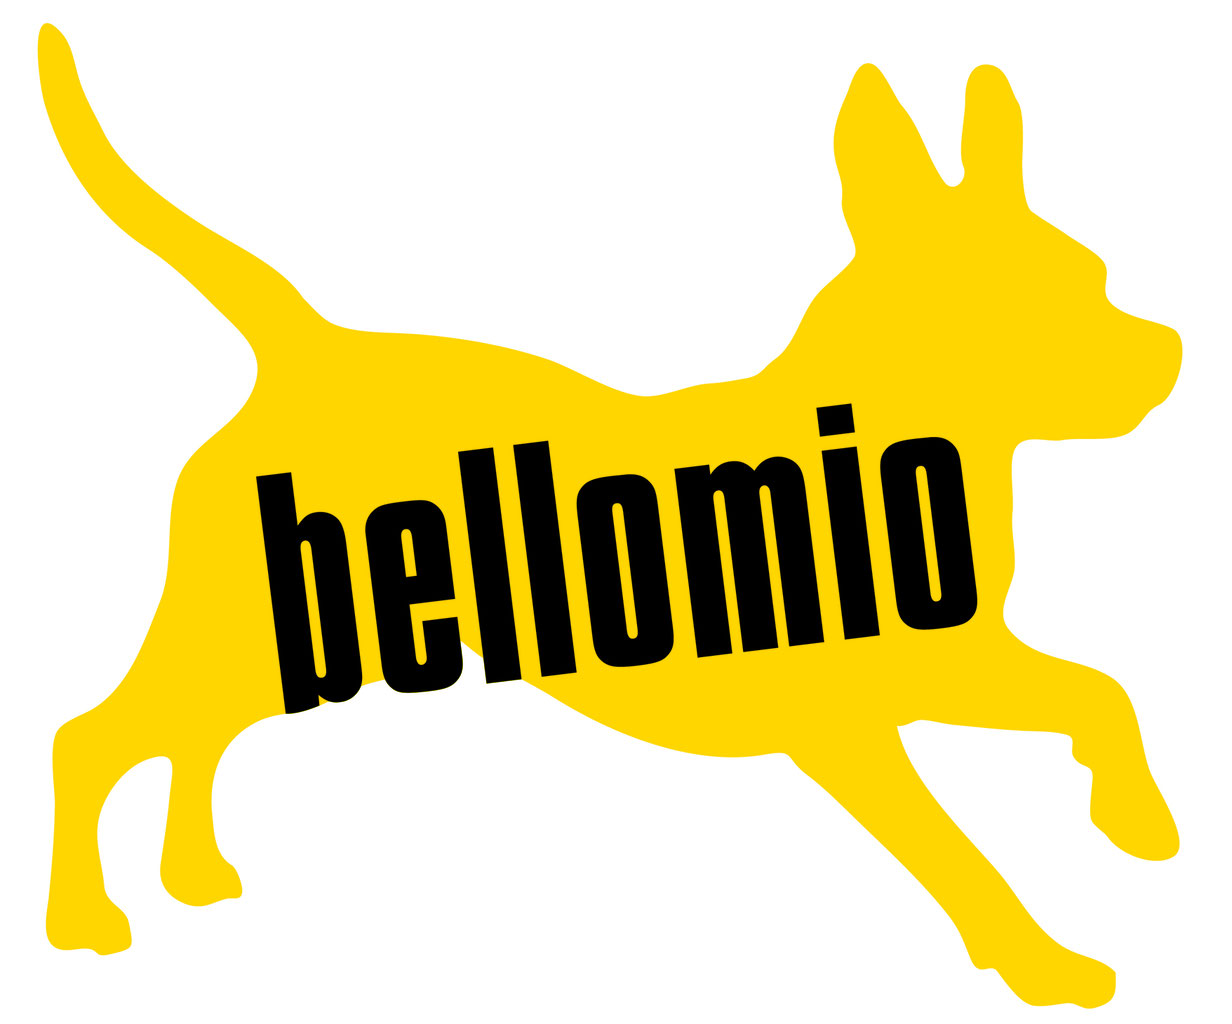 (c) Bellomio-berlin.de